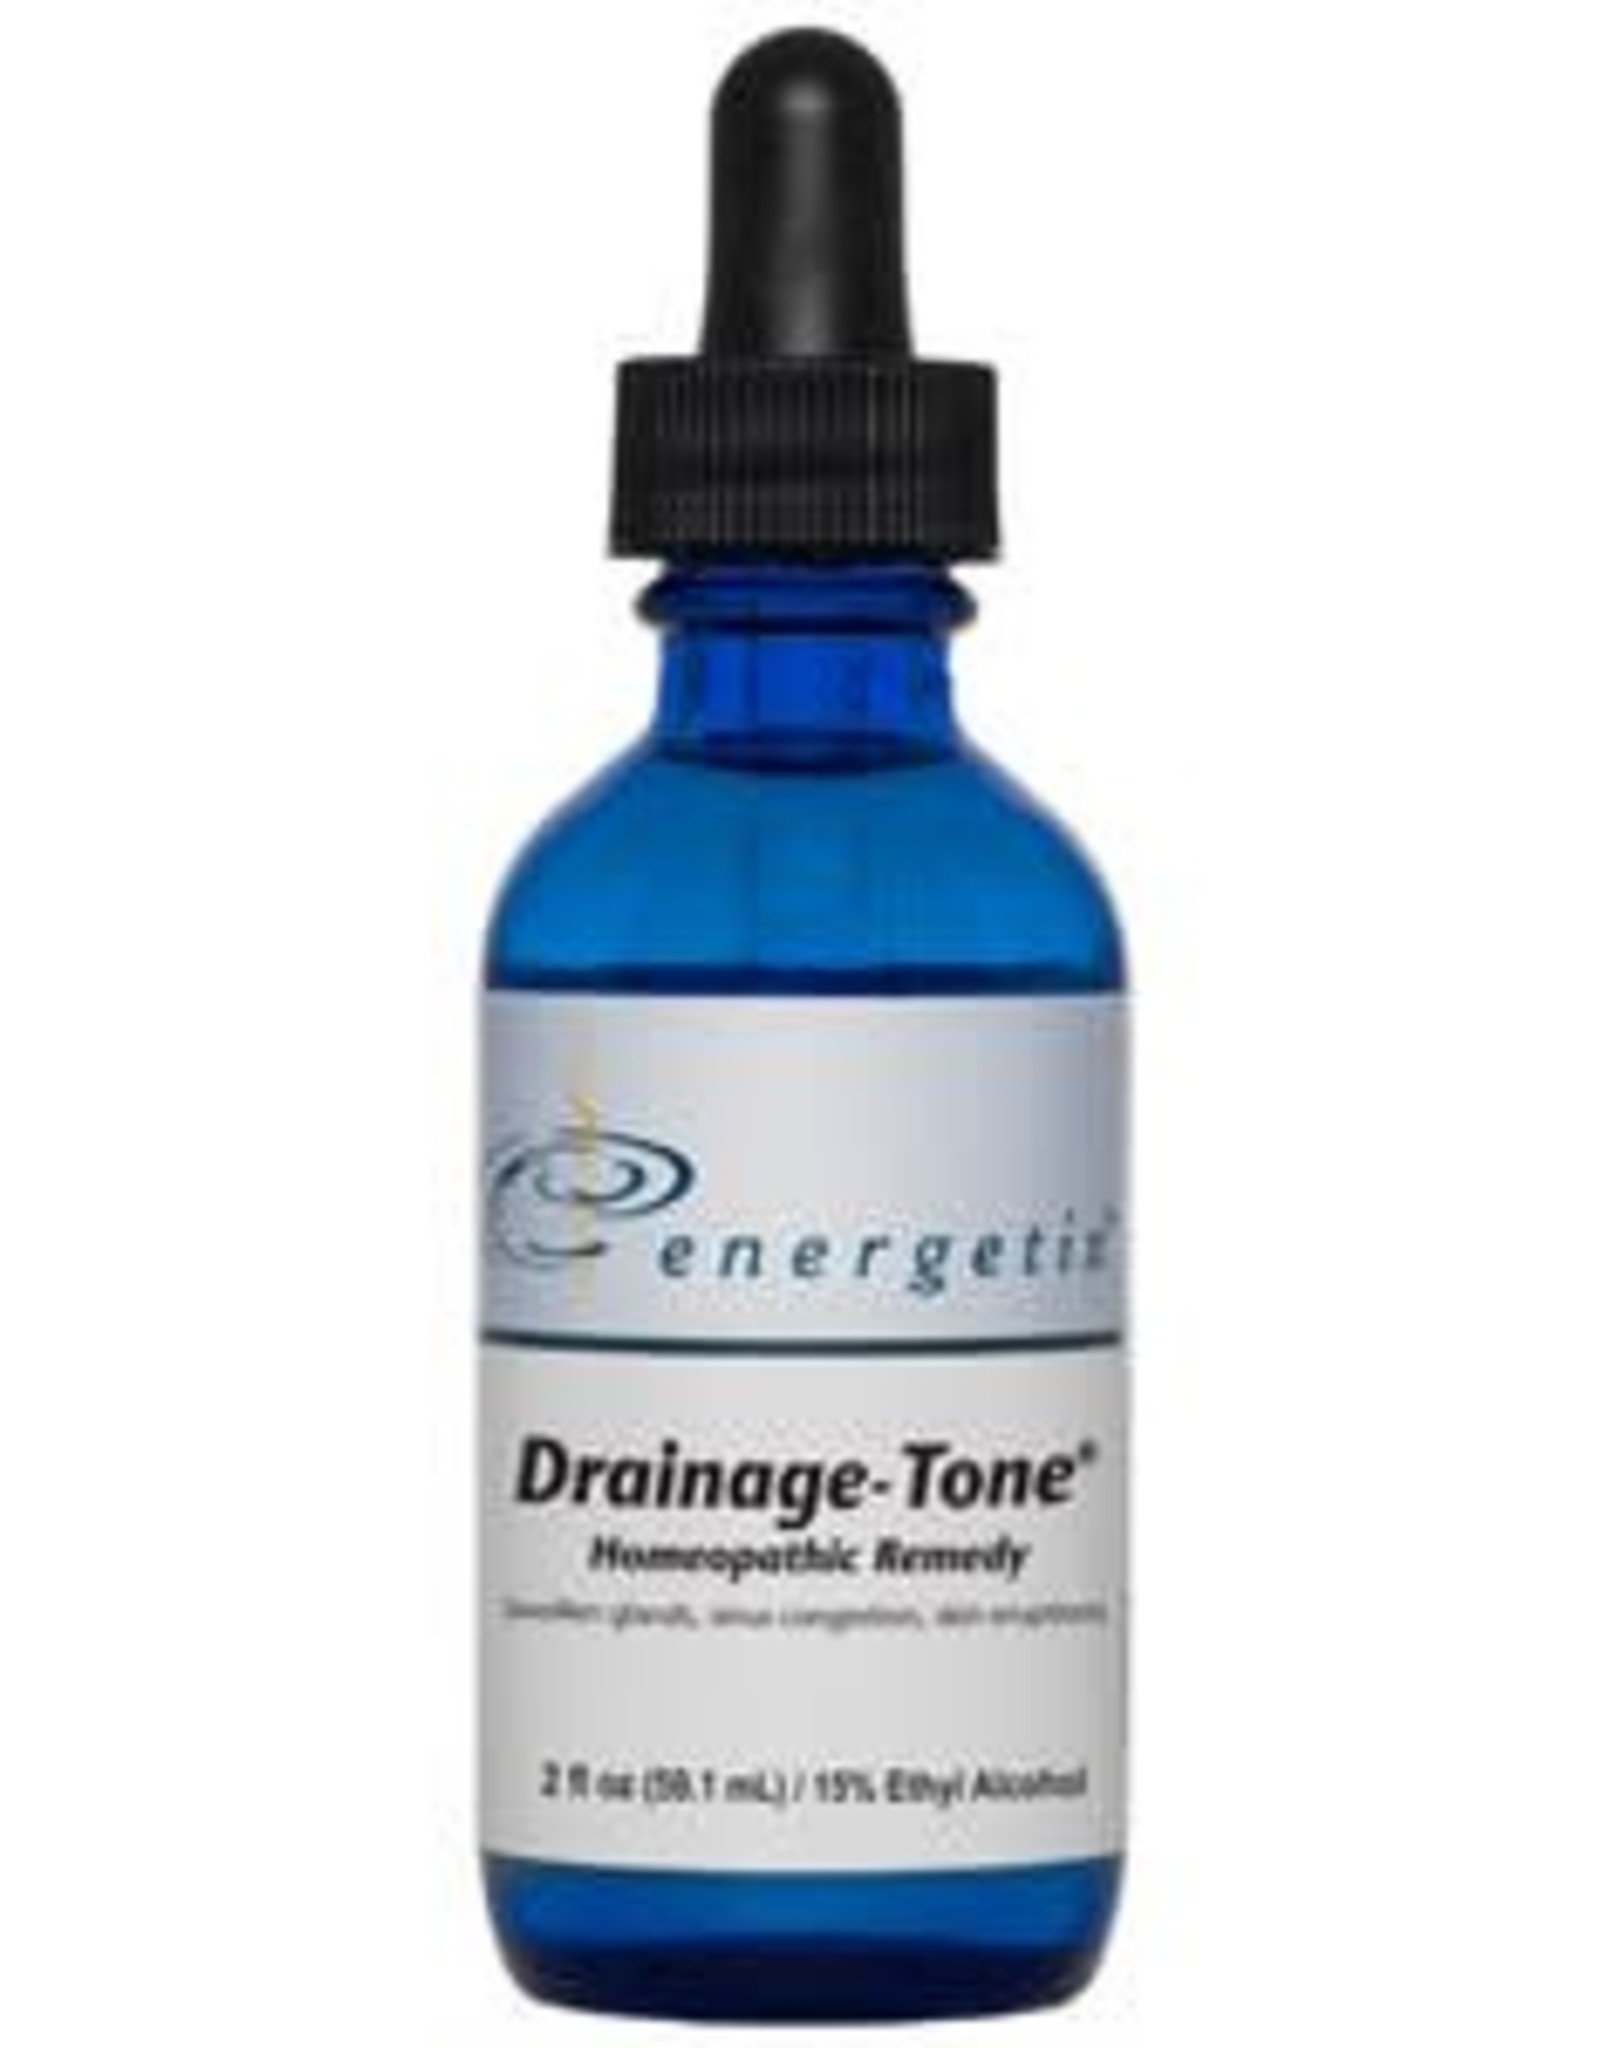 Energetix Drainage-Tone 2 oz.